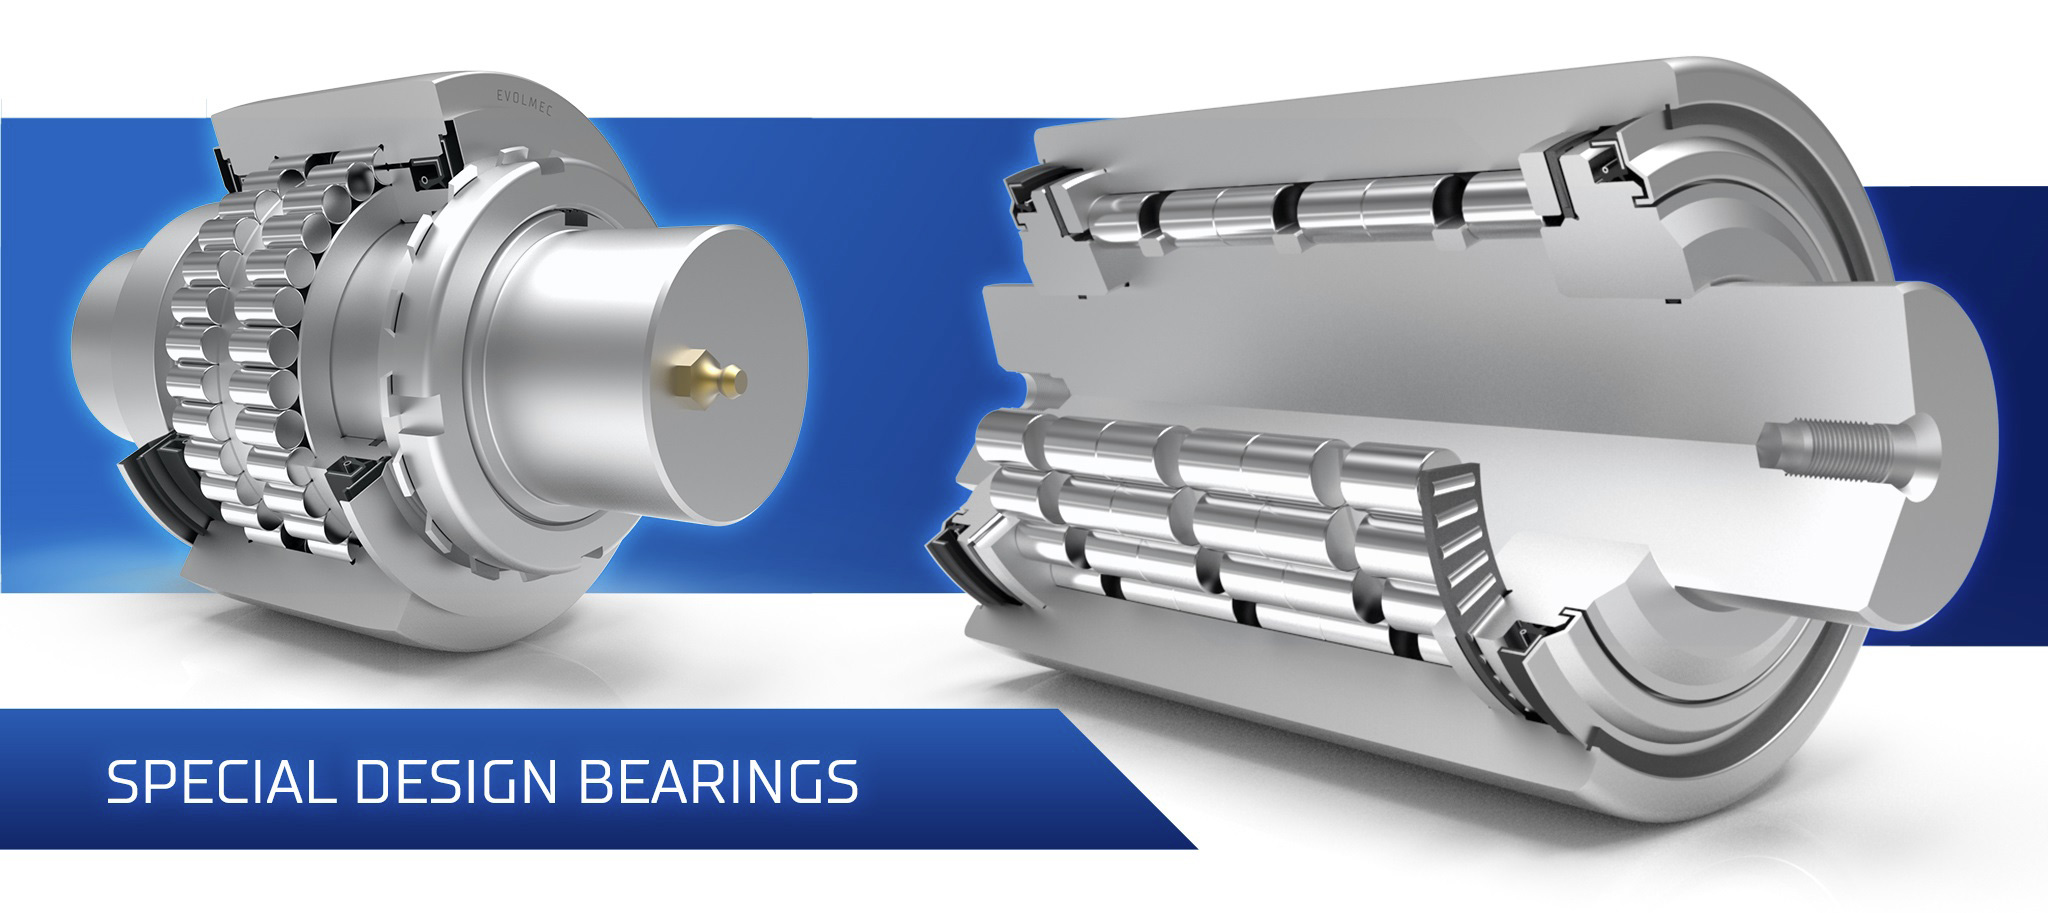 Special design bearings